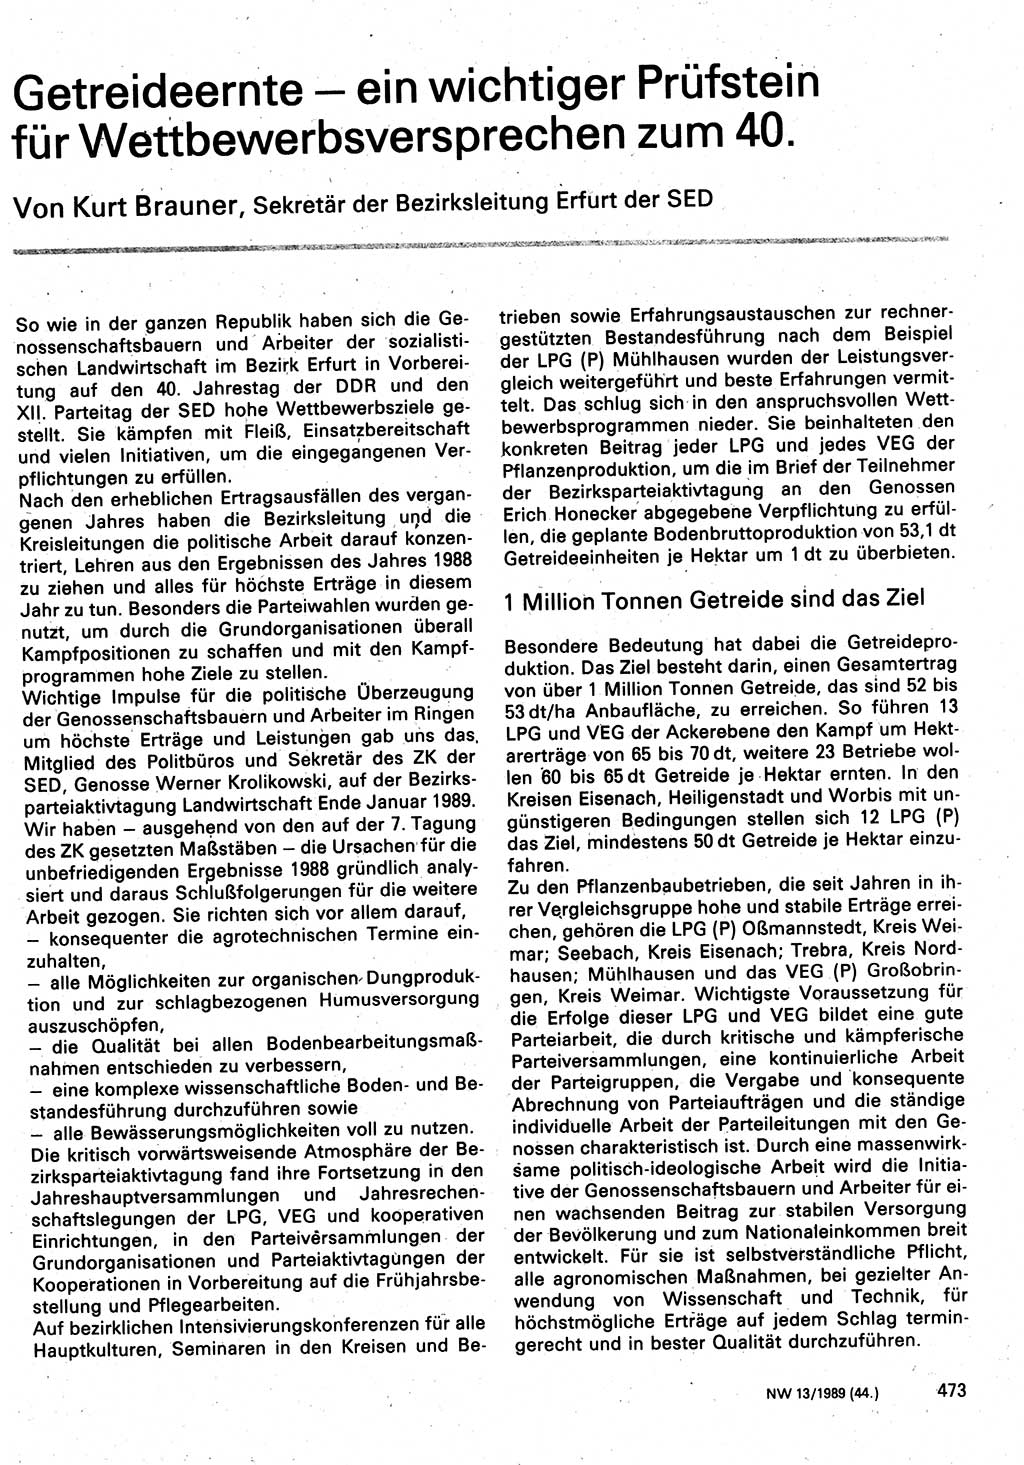 Neuer Weg (NW), Organ des Zentralkomitees (ZK) der SED (Sozialistische Einheitspartei Deutschlands) für Fragen des Parteilebens, 44. Jahrgang [Deutsche Demokratische Republik (DDR)] 1989, Seite 473 (NW ZK SED DDR 1989, S. 473)